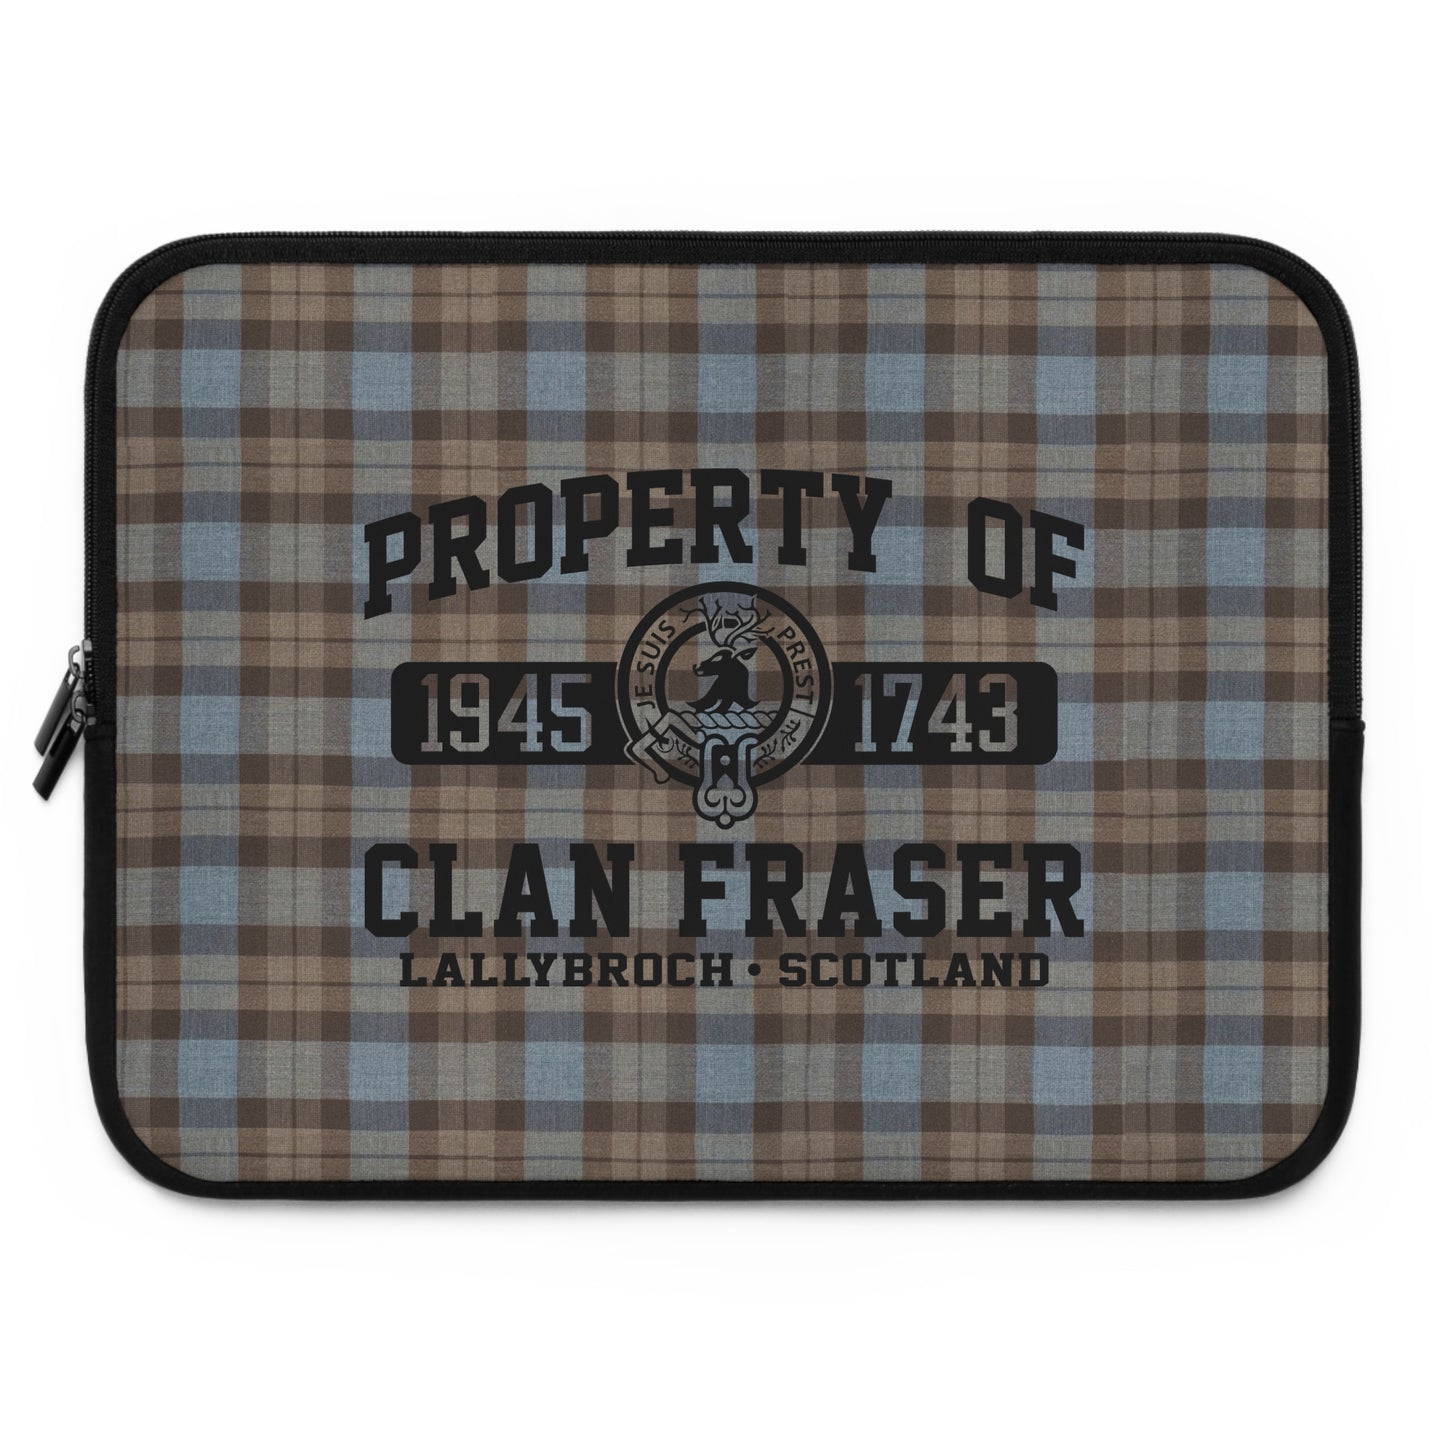 Property of Clan Fraser Laptop Sleeve - Outlander Fans